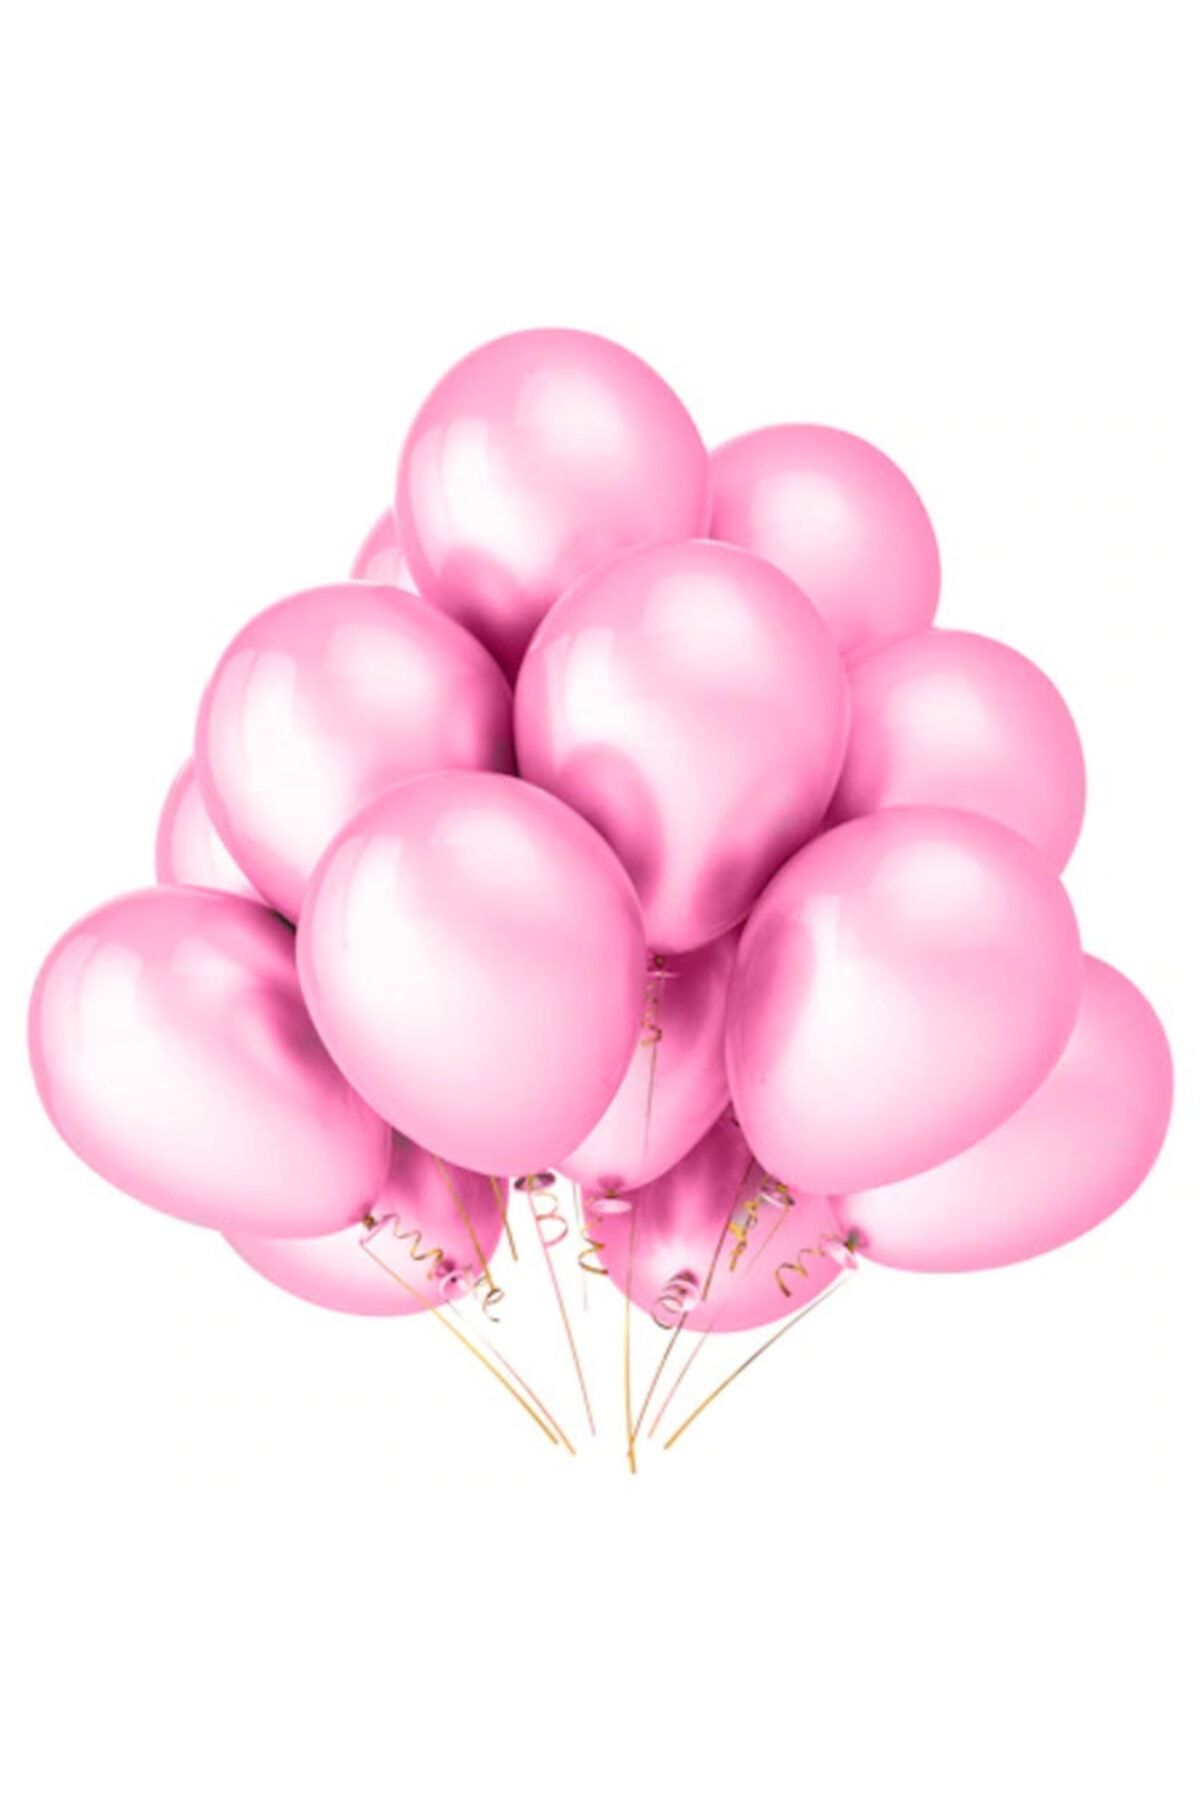 Цветы розовый шар. Розовые шарики. Розовые шарики воздушные. Воздушный шарик. Розовые шары для девочки.